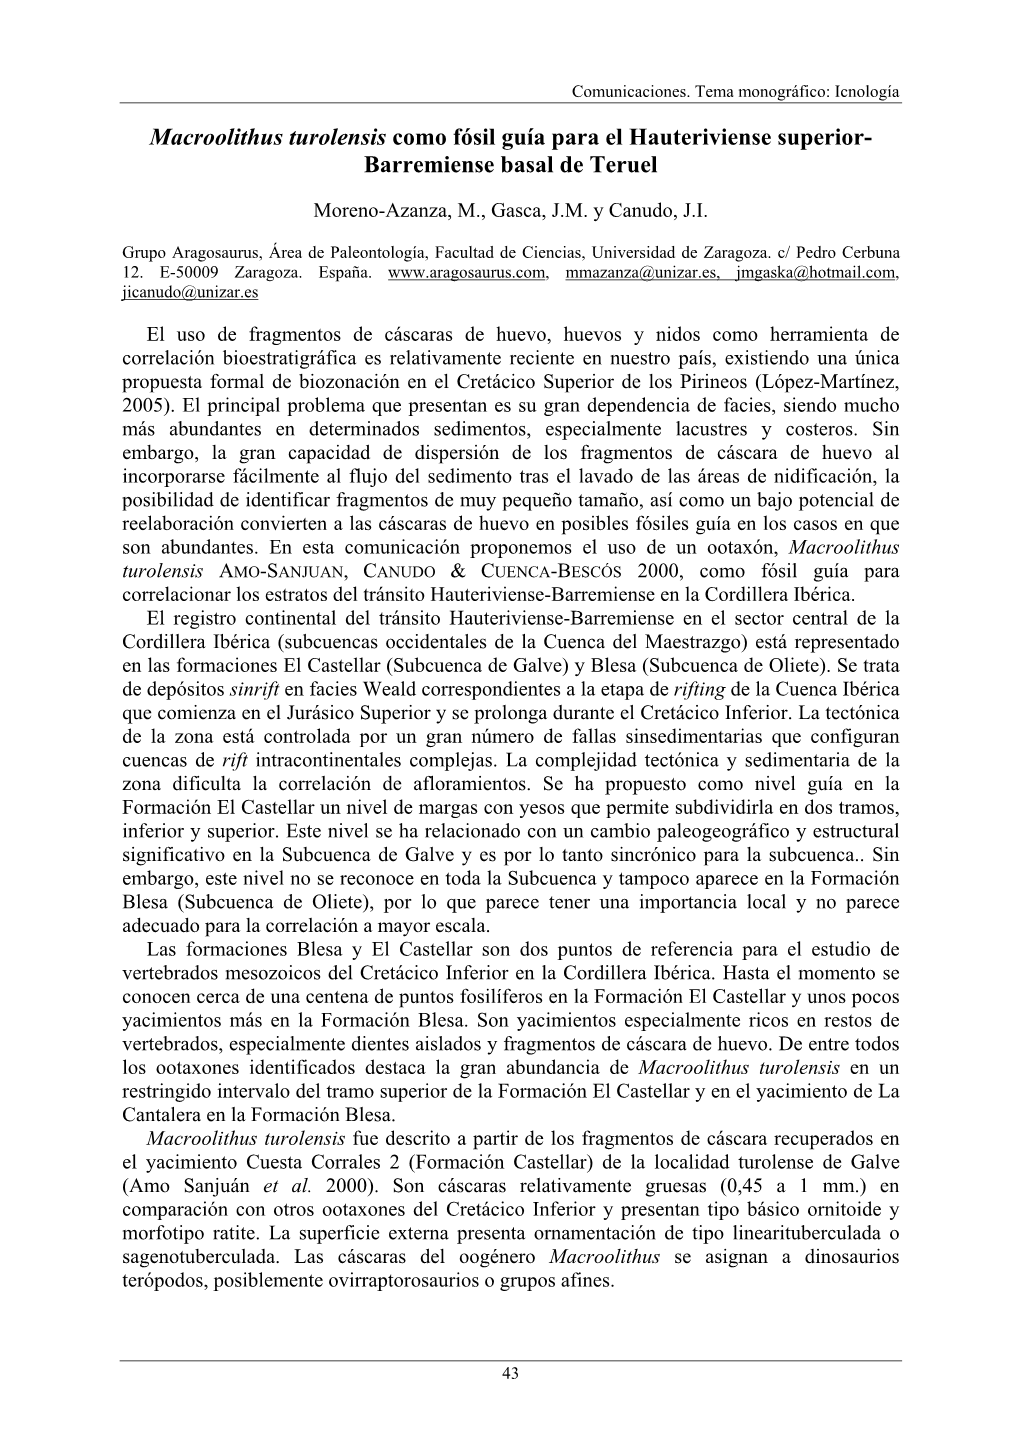 Macroolithus Turolensis Como Fósil Guía Para El Hauteriviense Superior- Barremiense Basal De Teruel